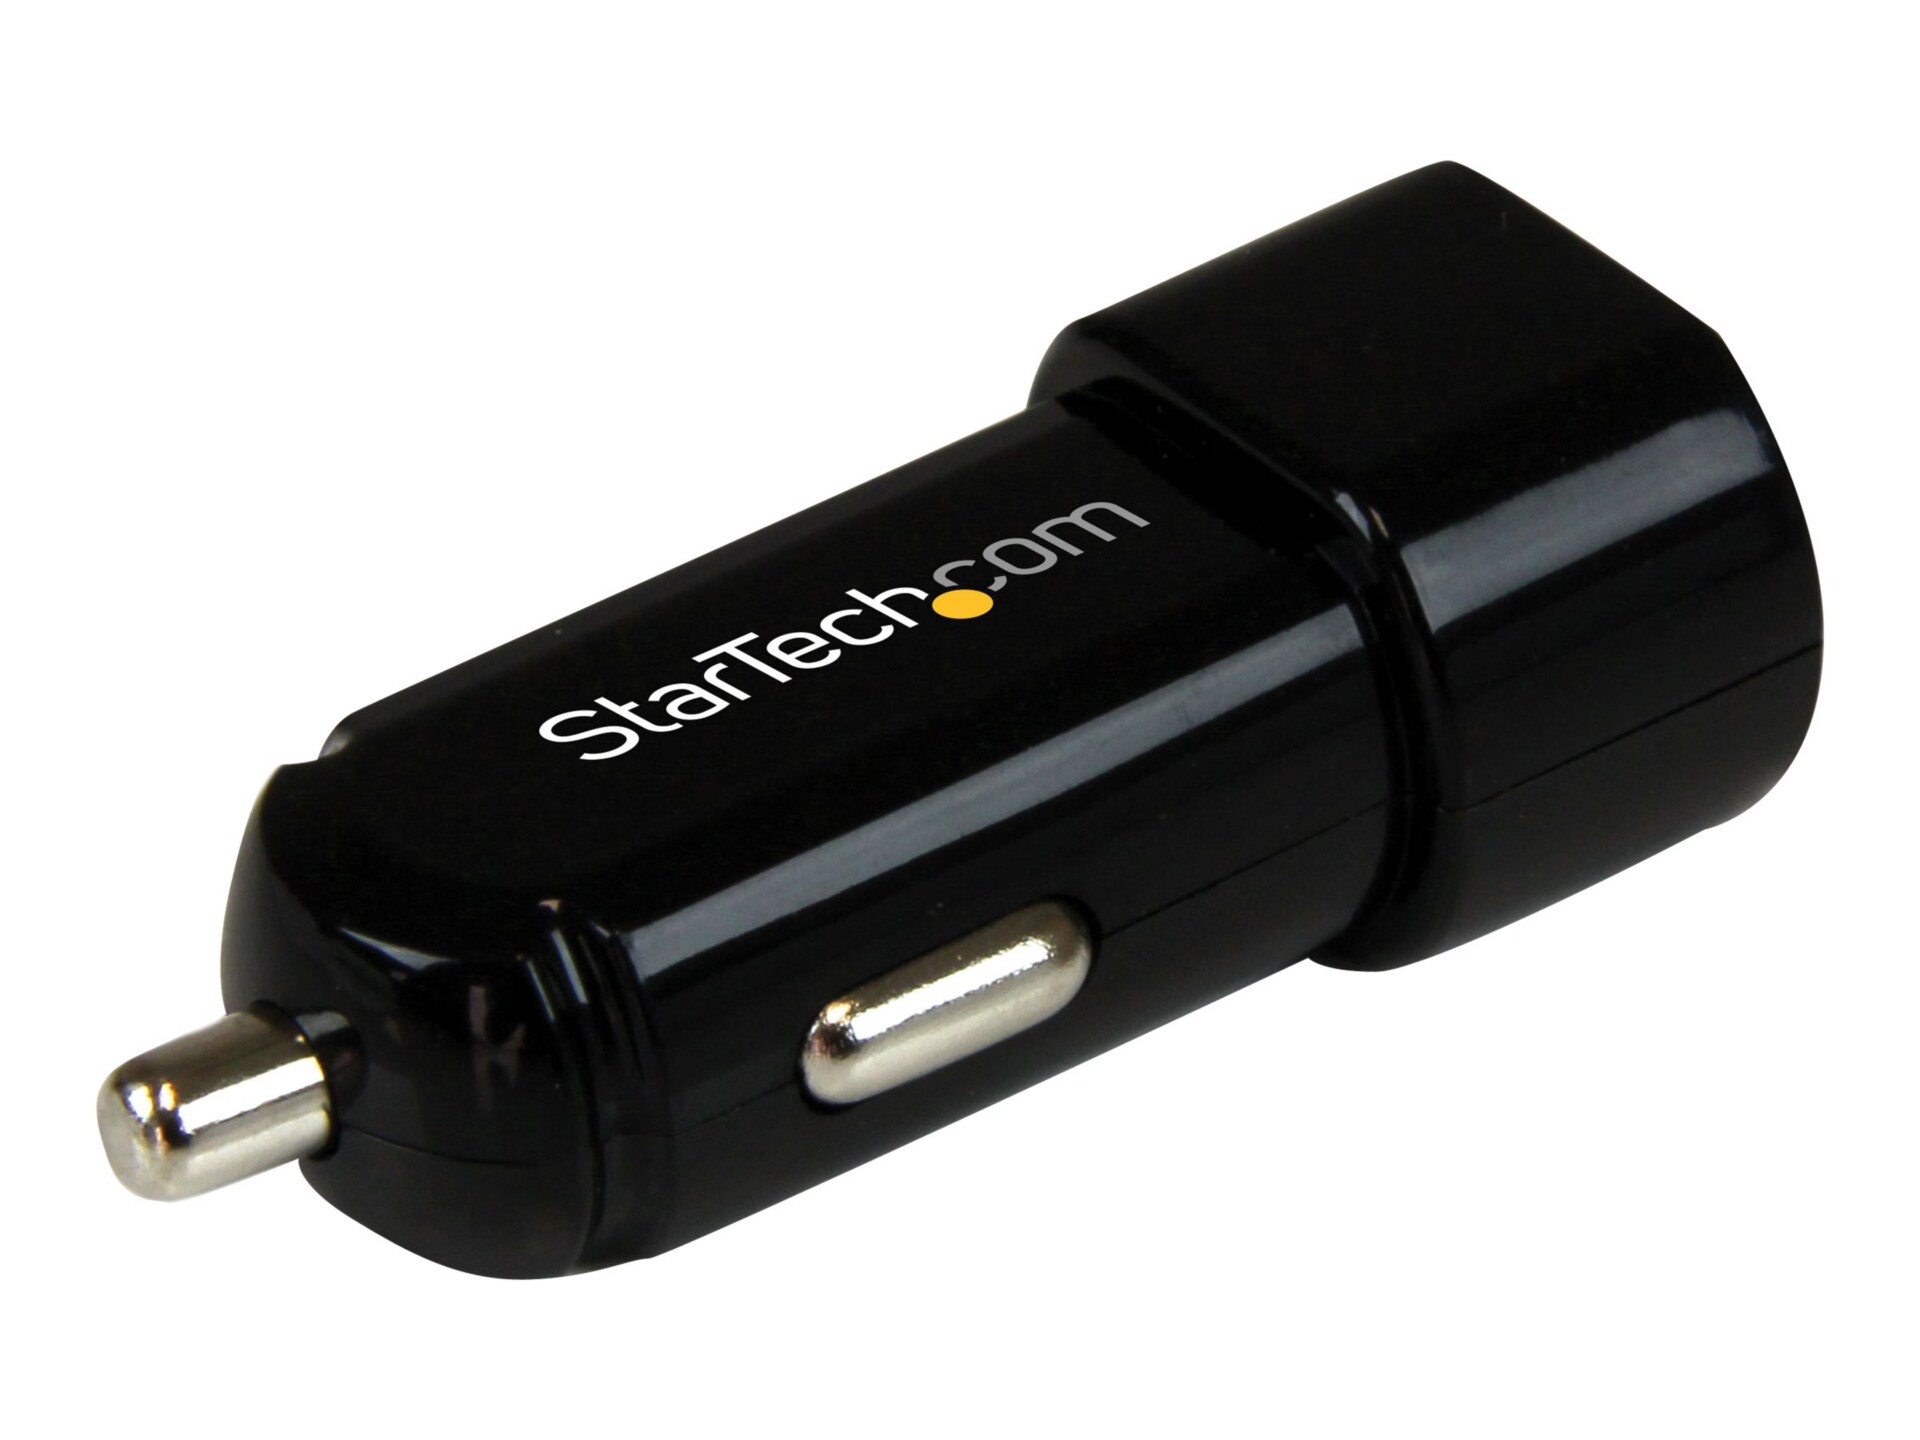 StarTech.com Dual Port USB Car Charger High Power (17 Watt / 3.4 Amp)
